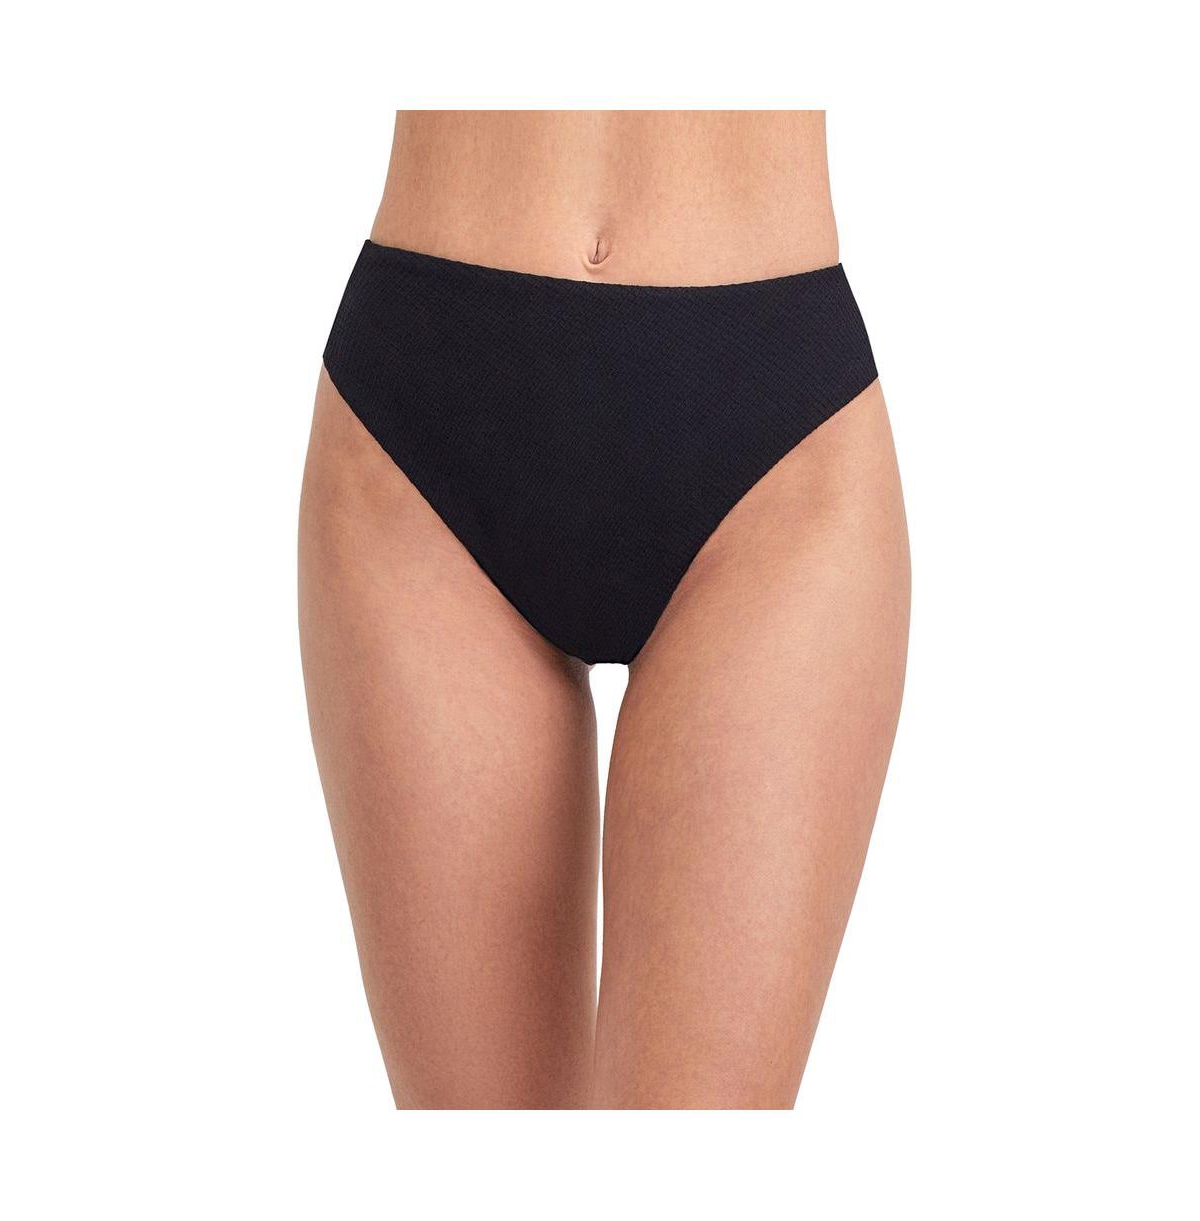 Women's Solid Textured high leg high waist swim bottom - Teal